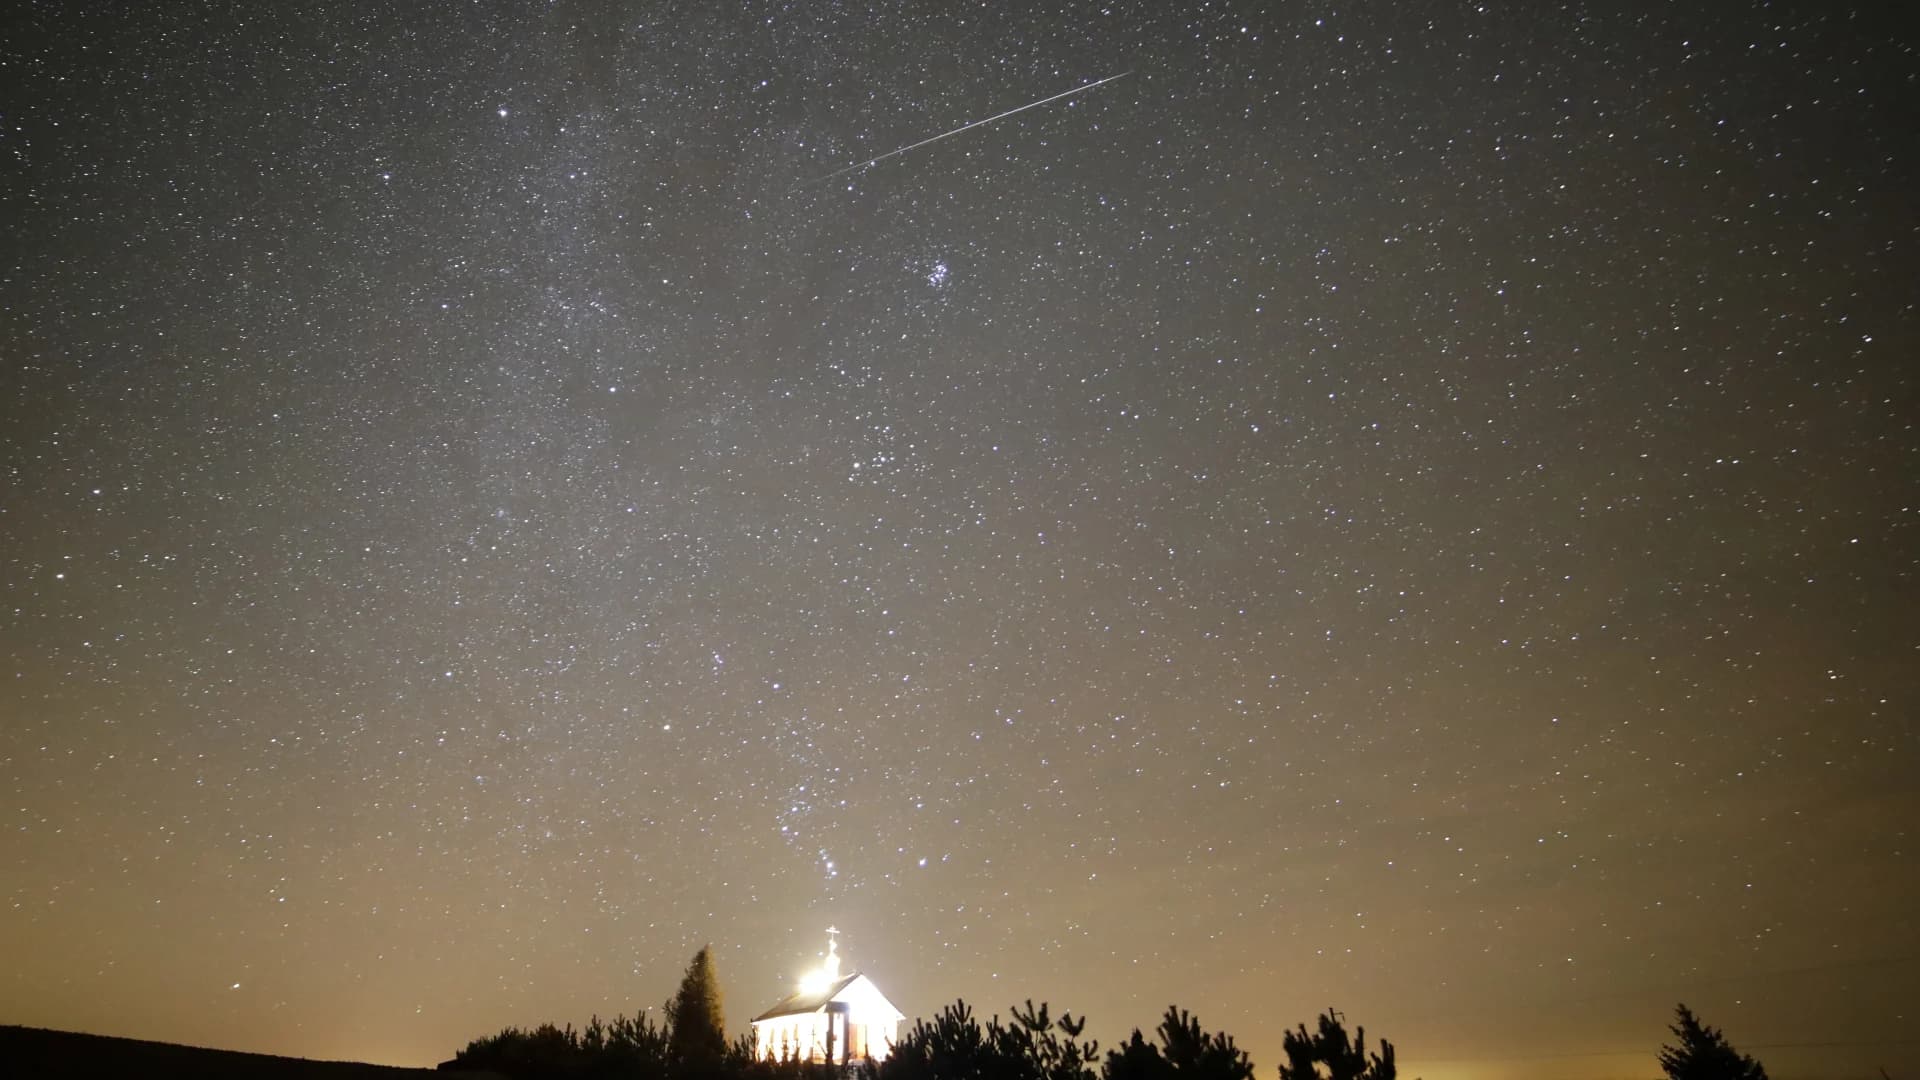 'The king' is coming: Geminids meteor shower peaks next week